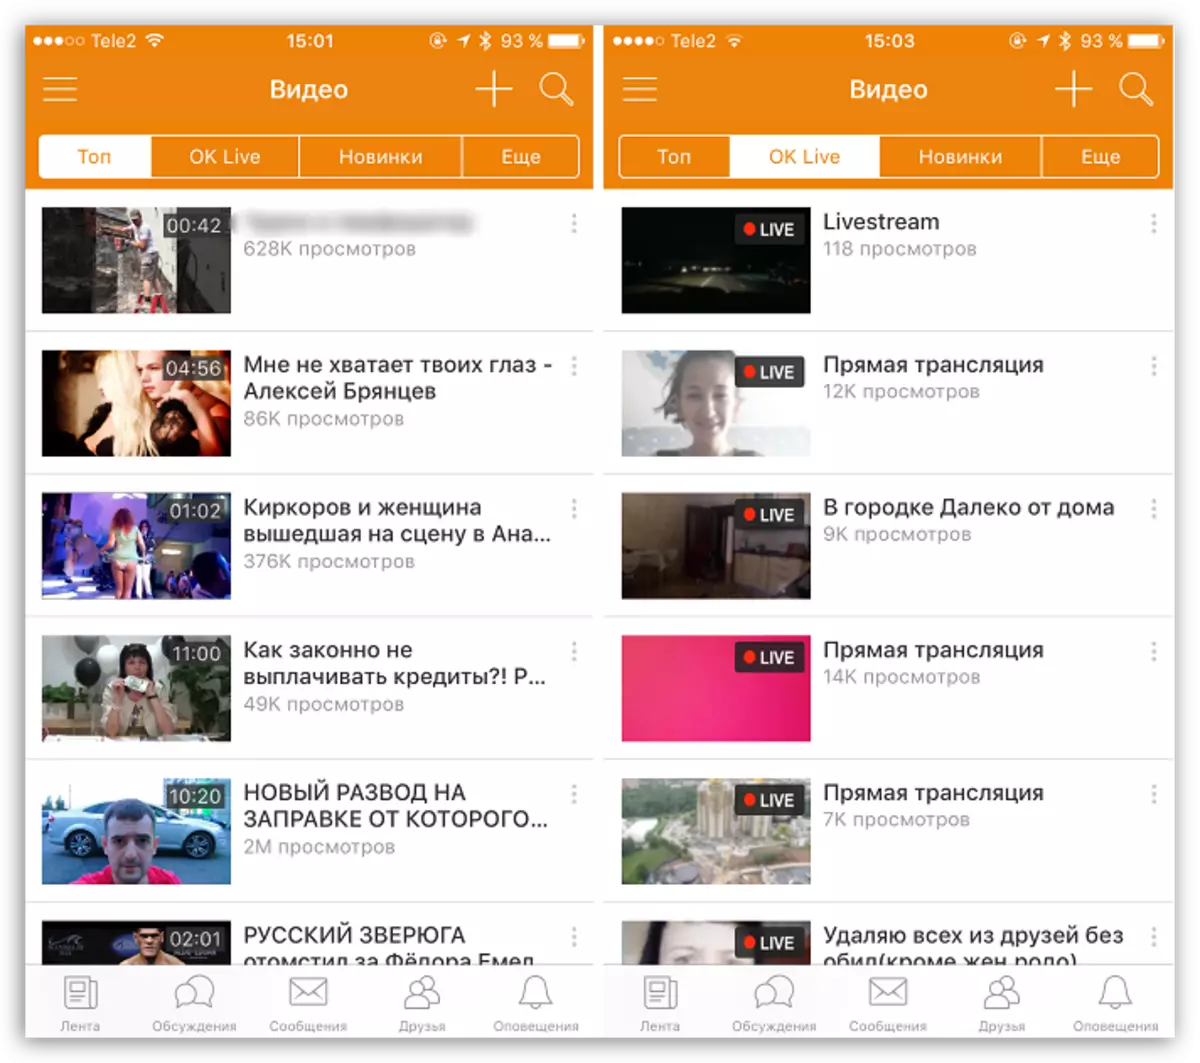 આઇઓએસ માટે Apps Odnoklassniki માં વિડિઓ